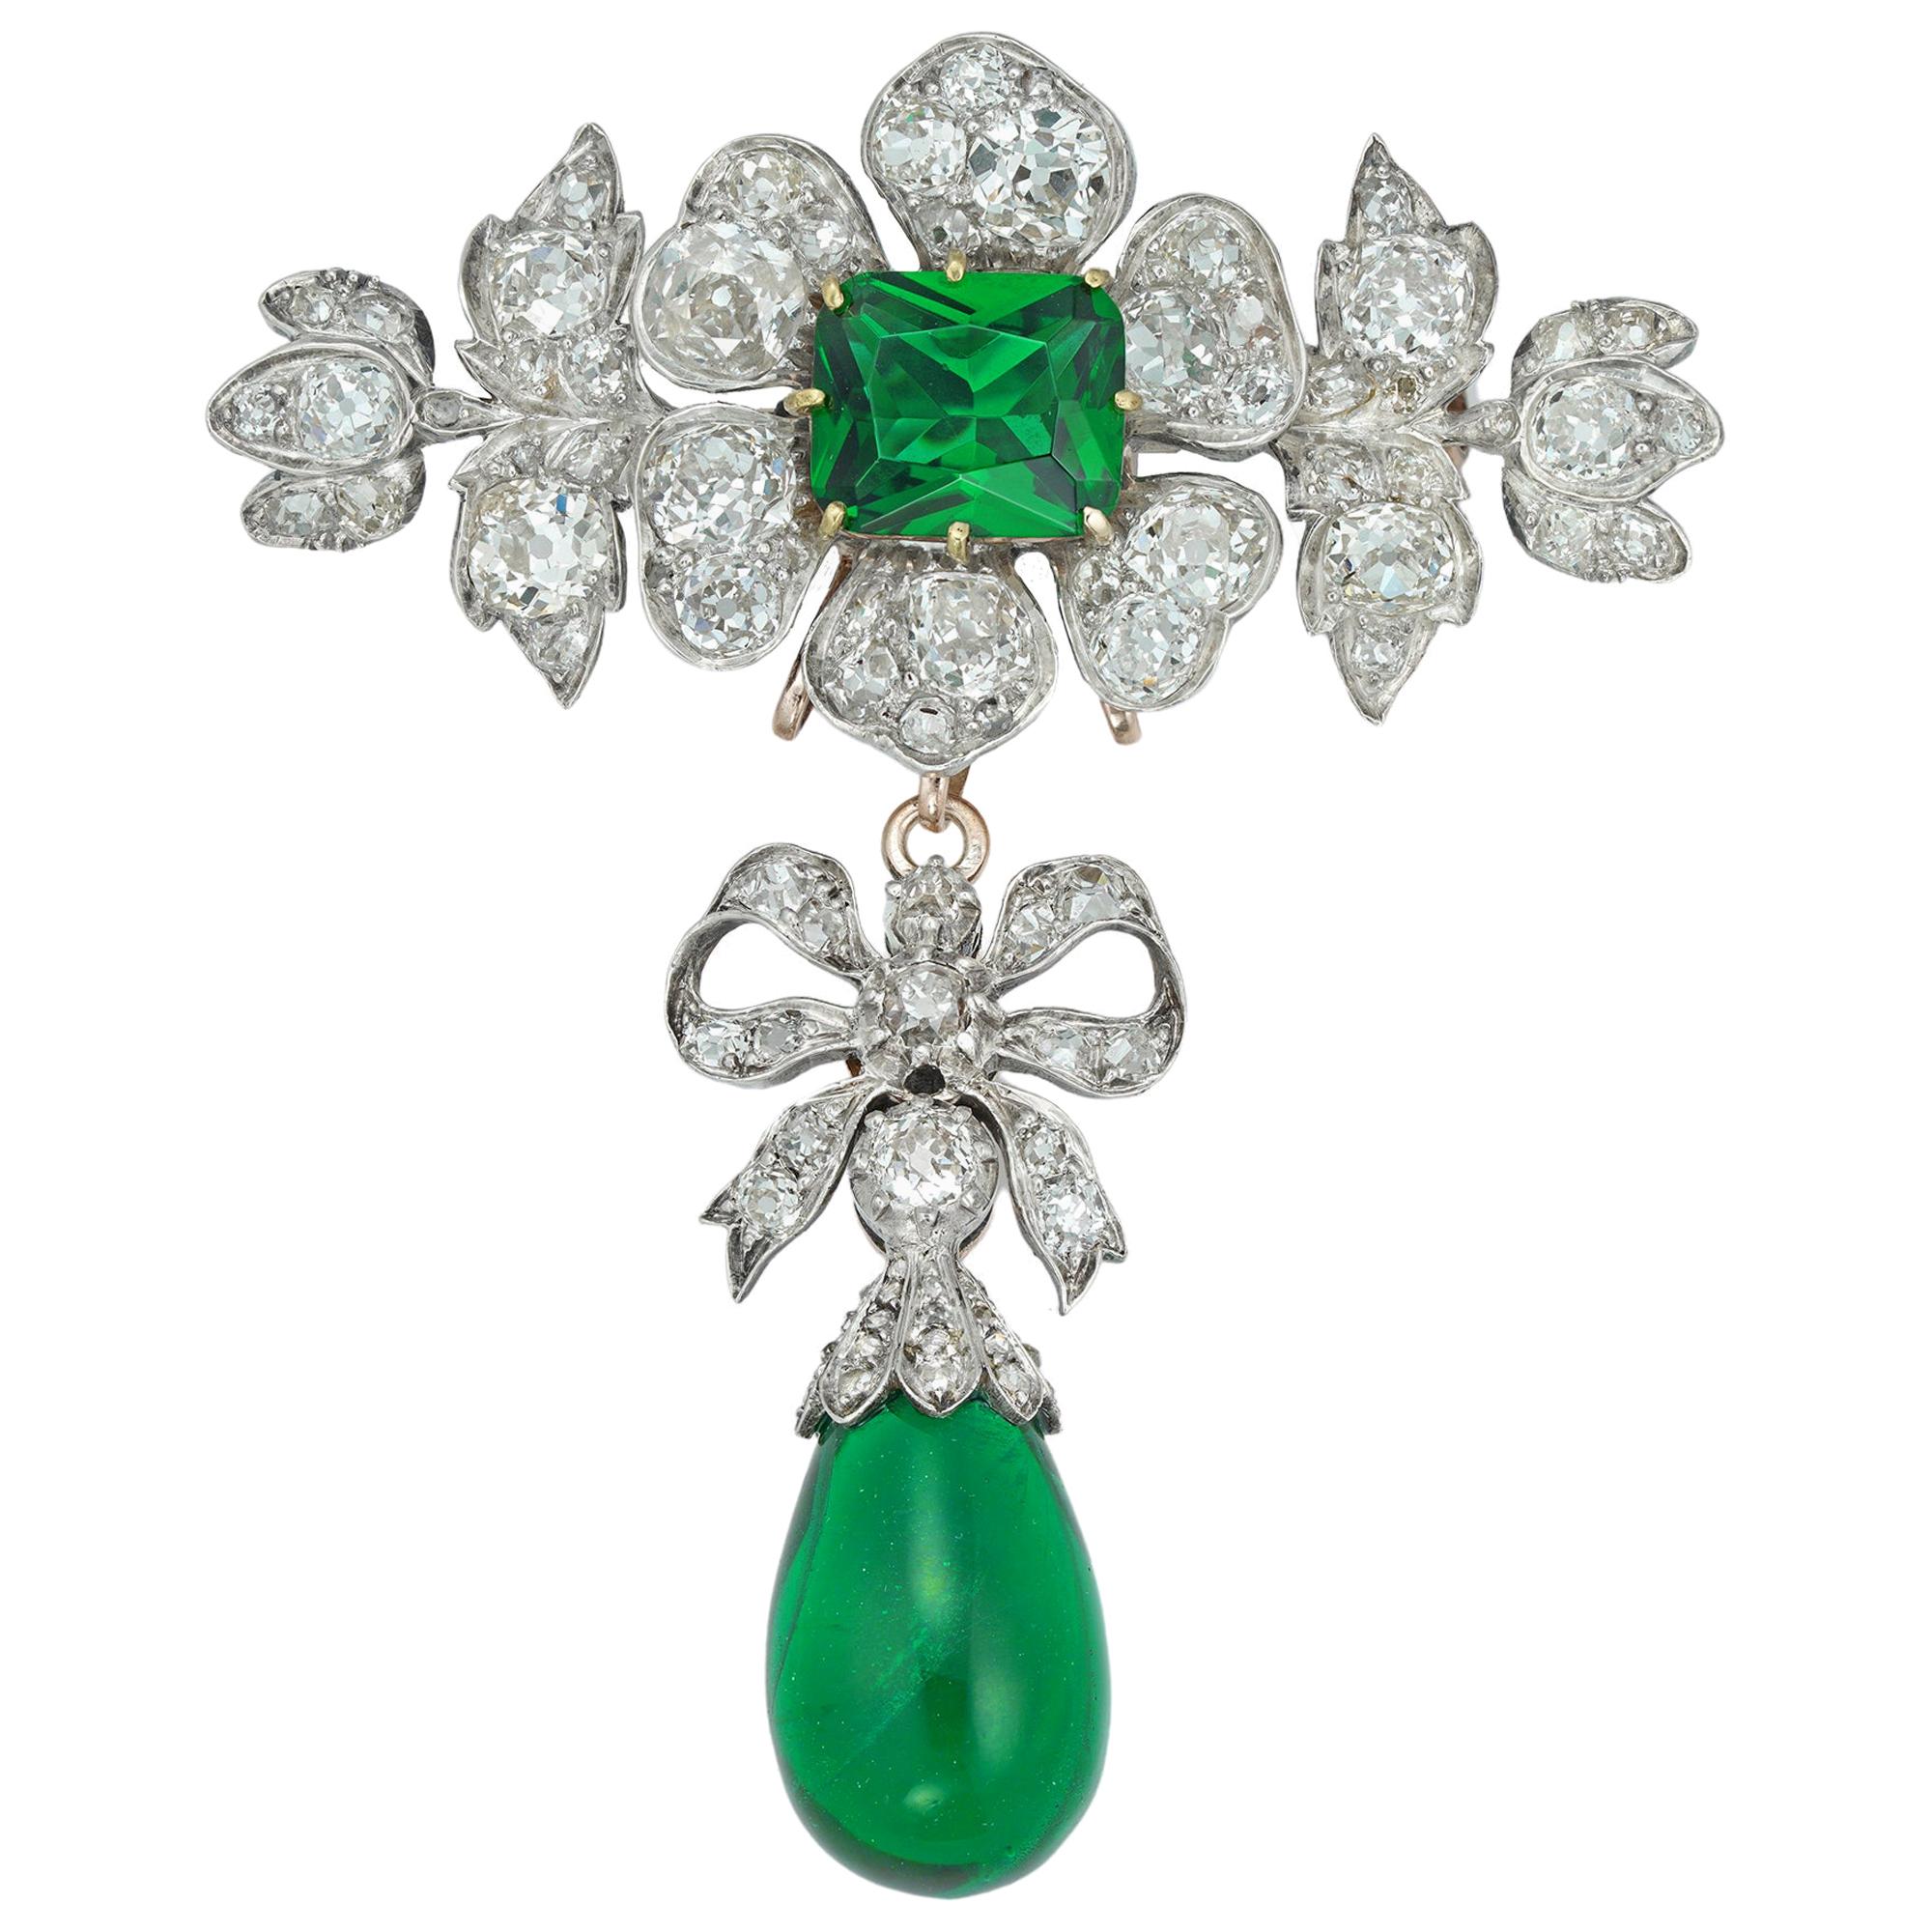 Viktorianische Brosche mit Diamanten und grünen Verzierungen